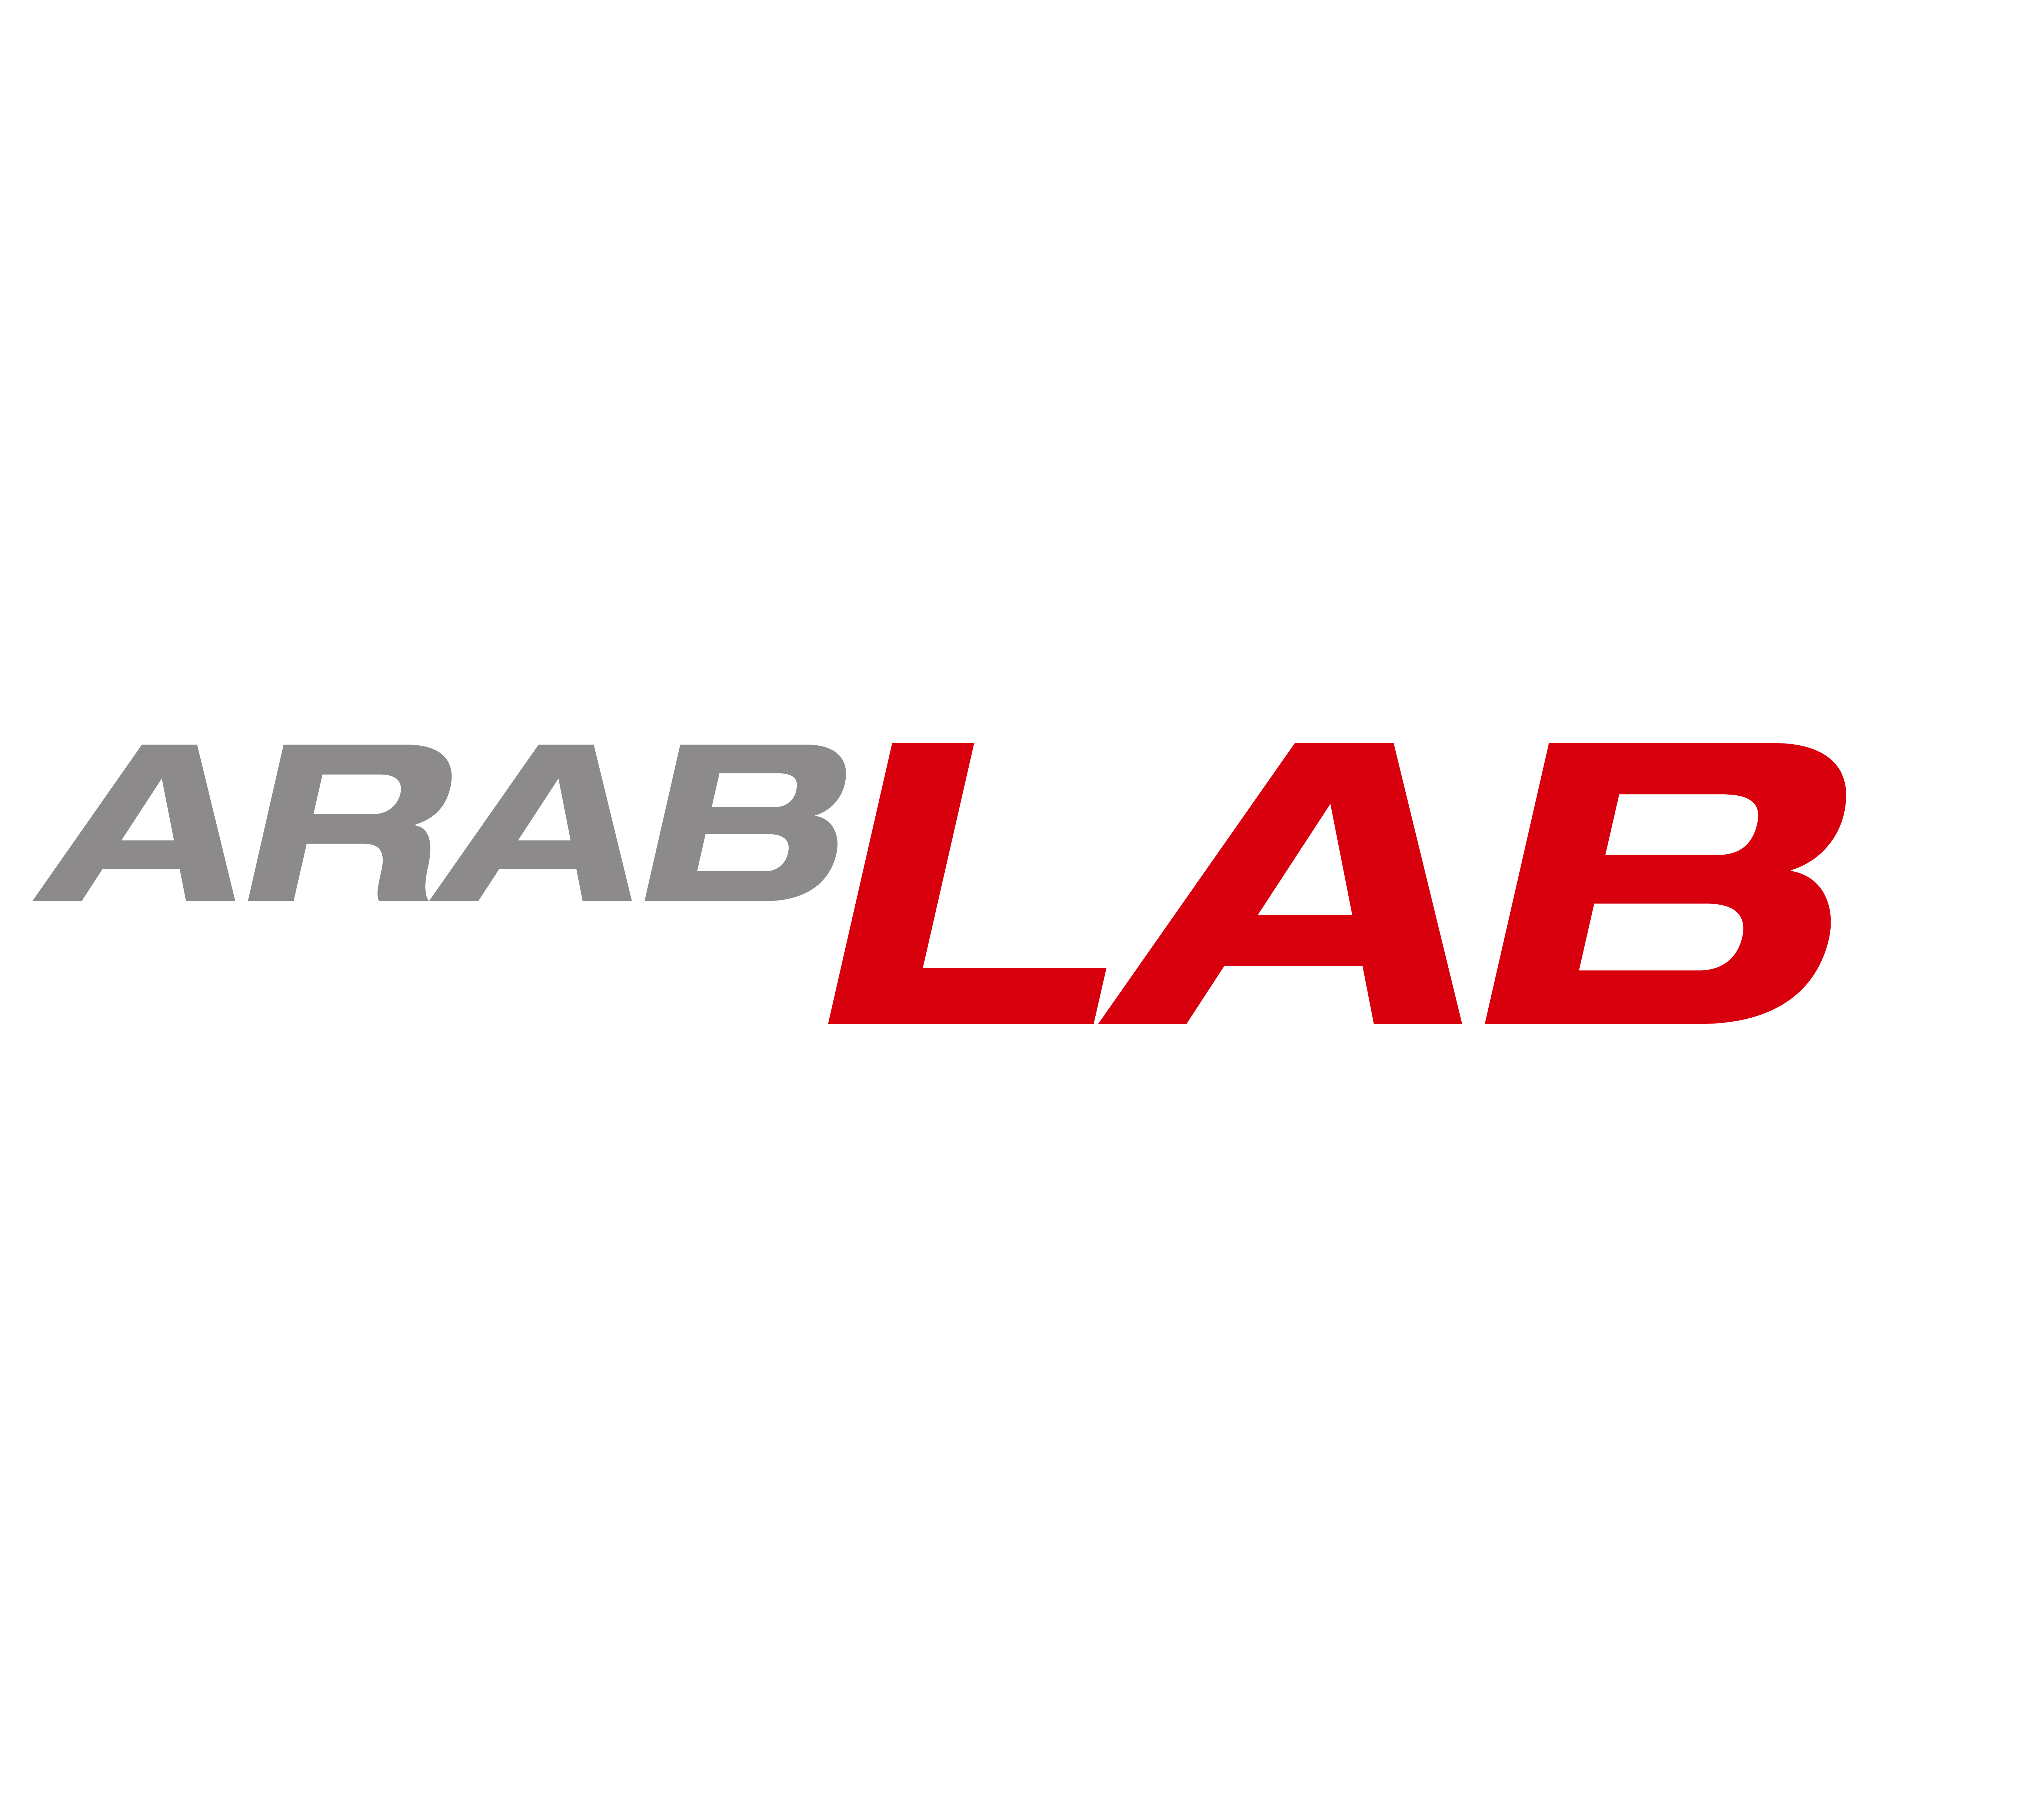 ArabLab 2023